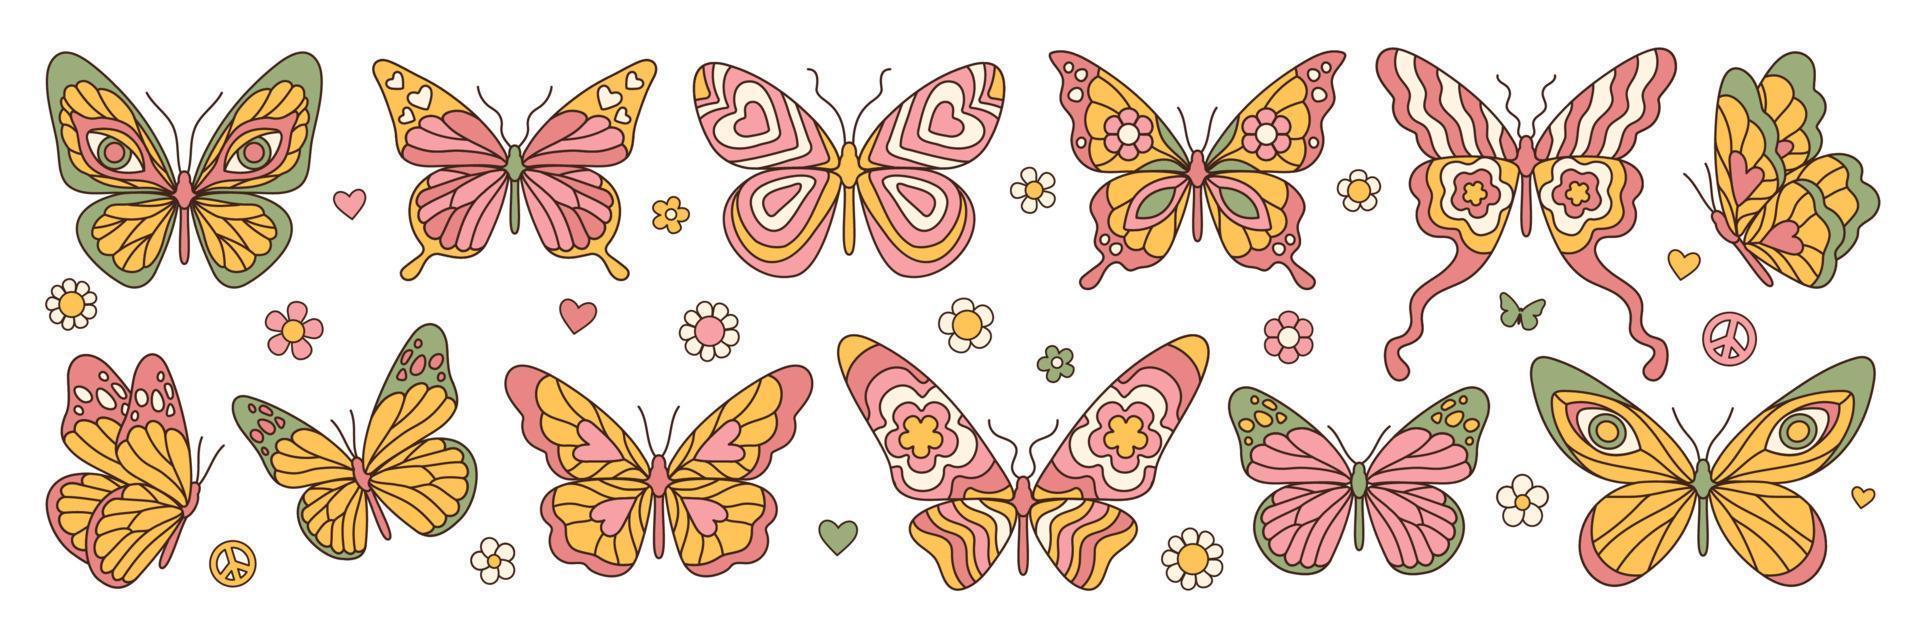 borboleta groovy, margarida, adesivos de flores. elementos hippie dos anos 60 e 70. sinal romântico floral e símbolos. vetor